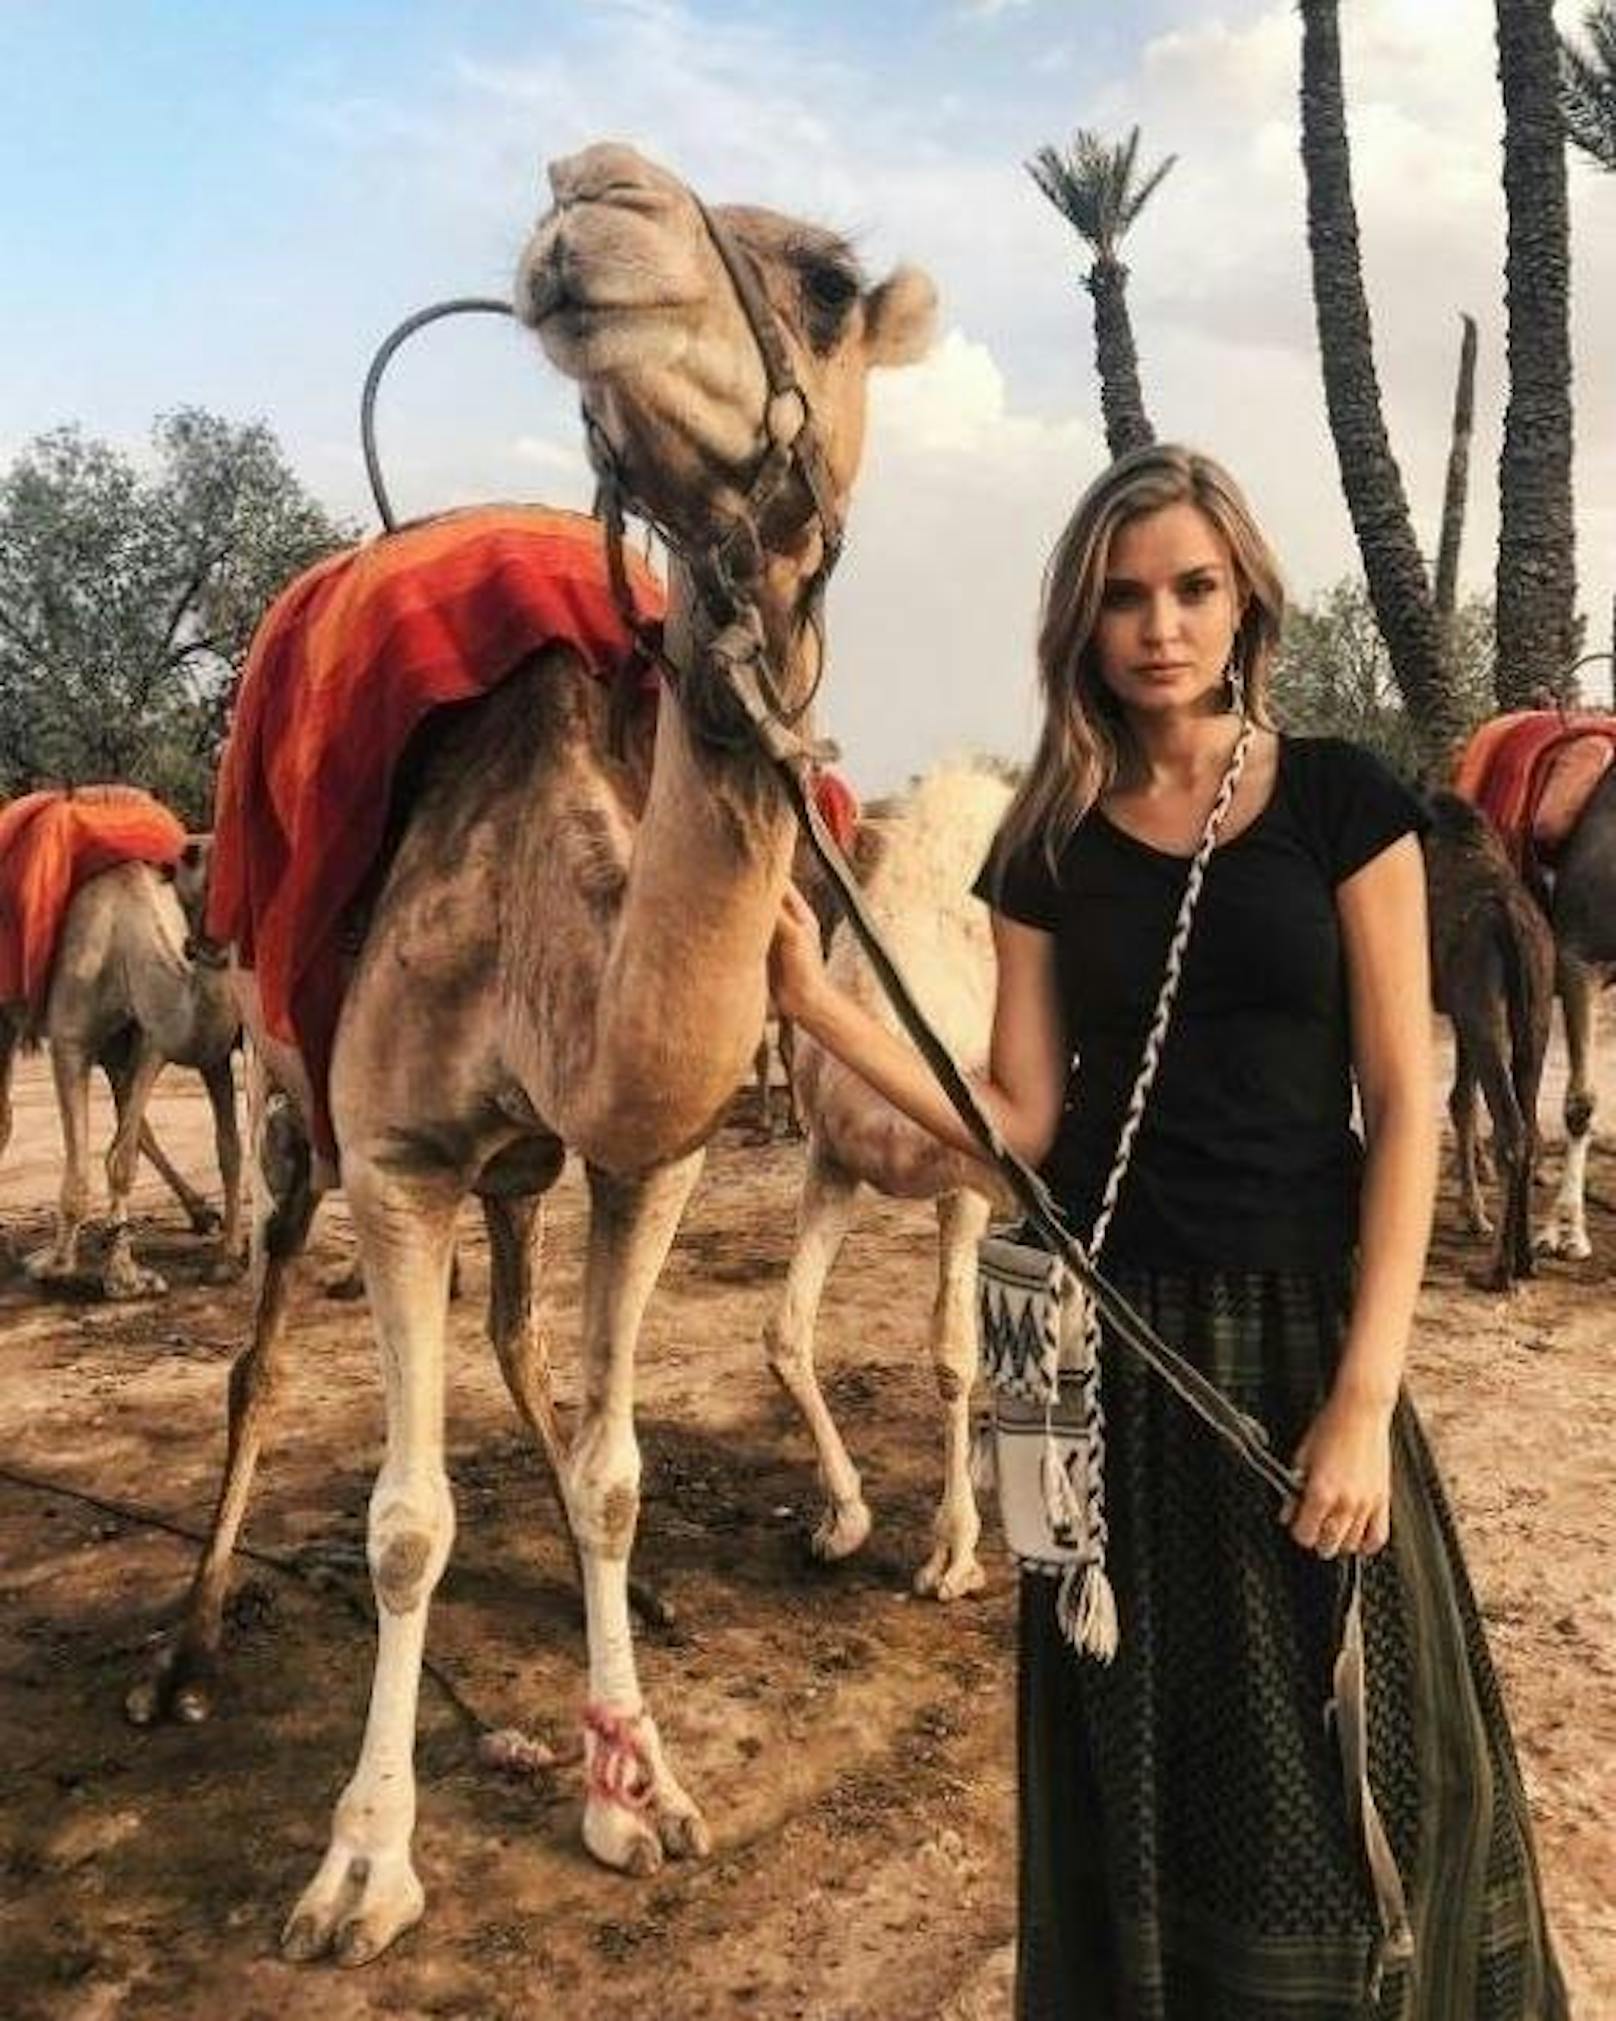 29.08.2017: Das dänische Model Josephine Skriver zeigt sich auf Instagram mit seinem "neuen Kollegen".